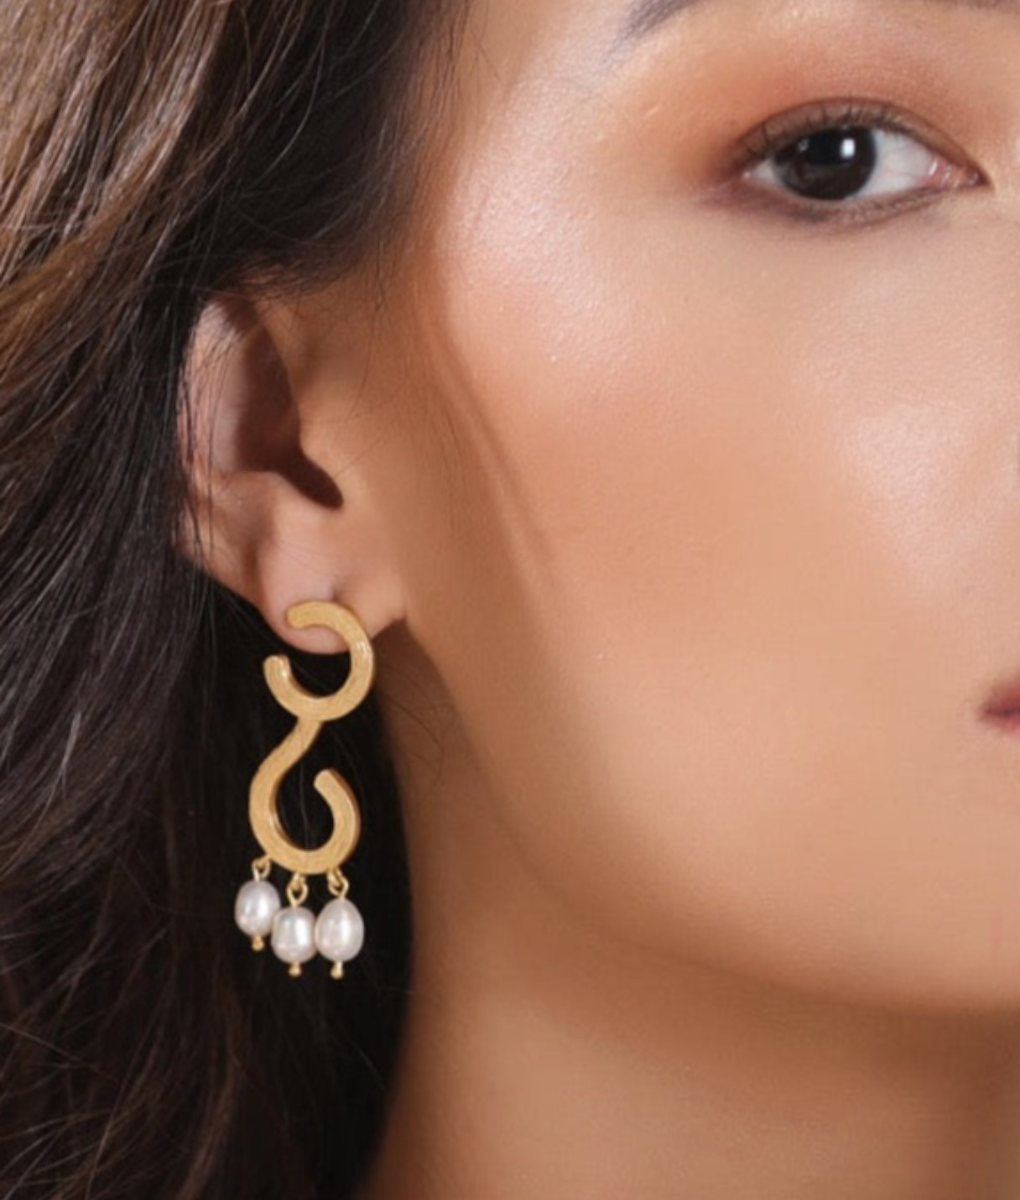 The Sienna Earrings